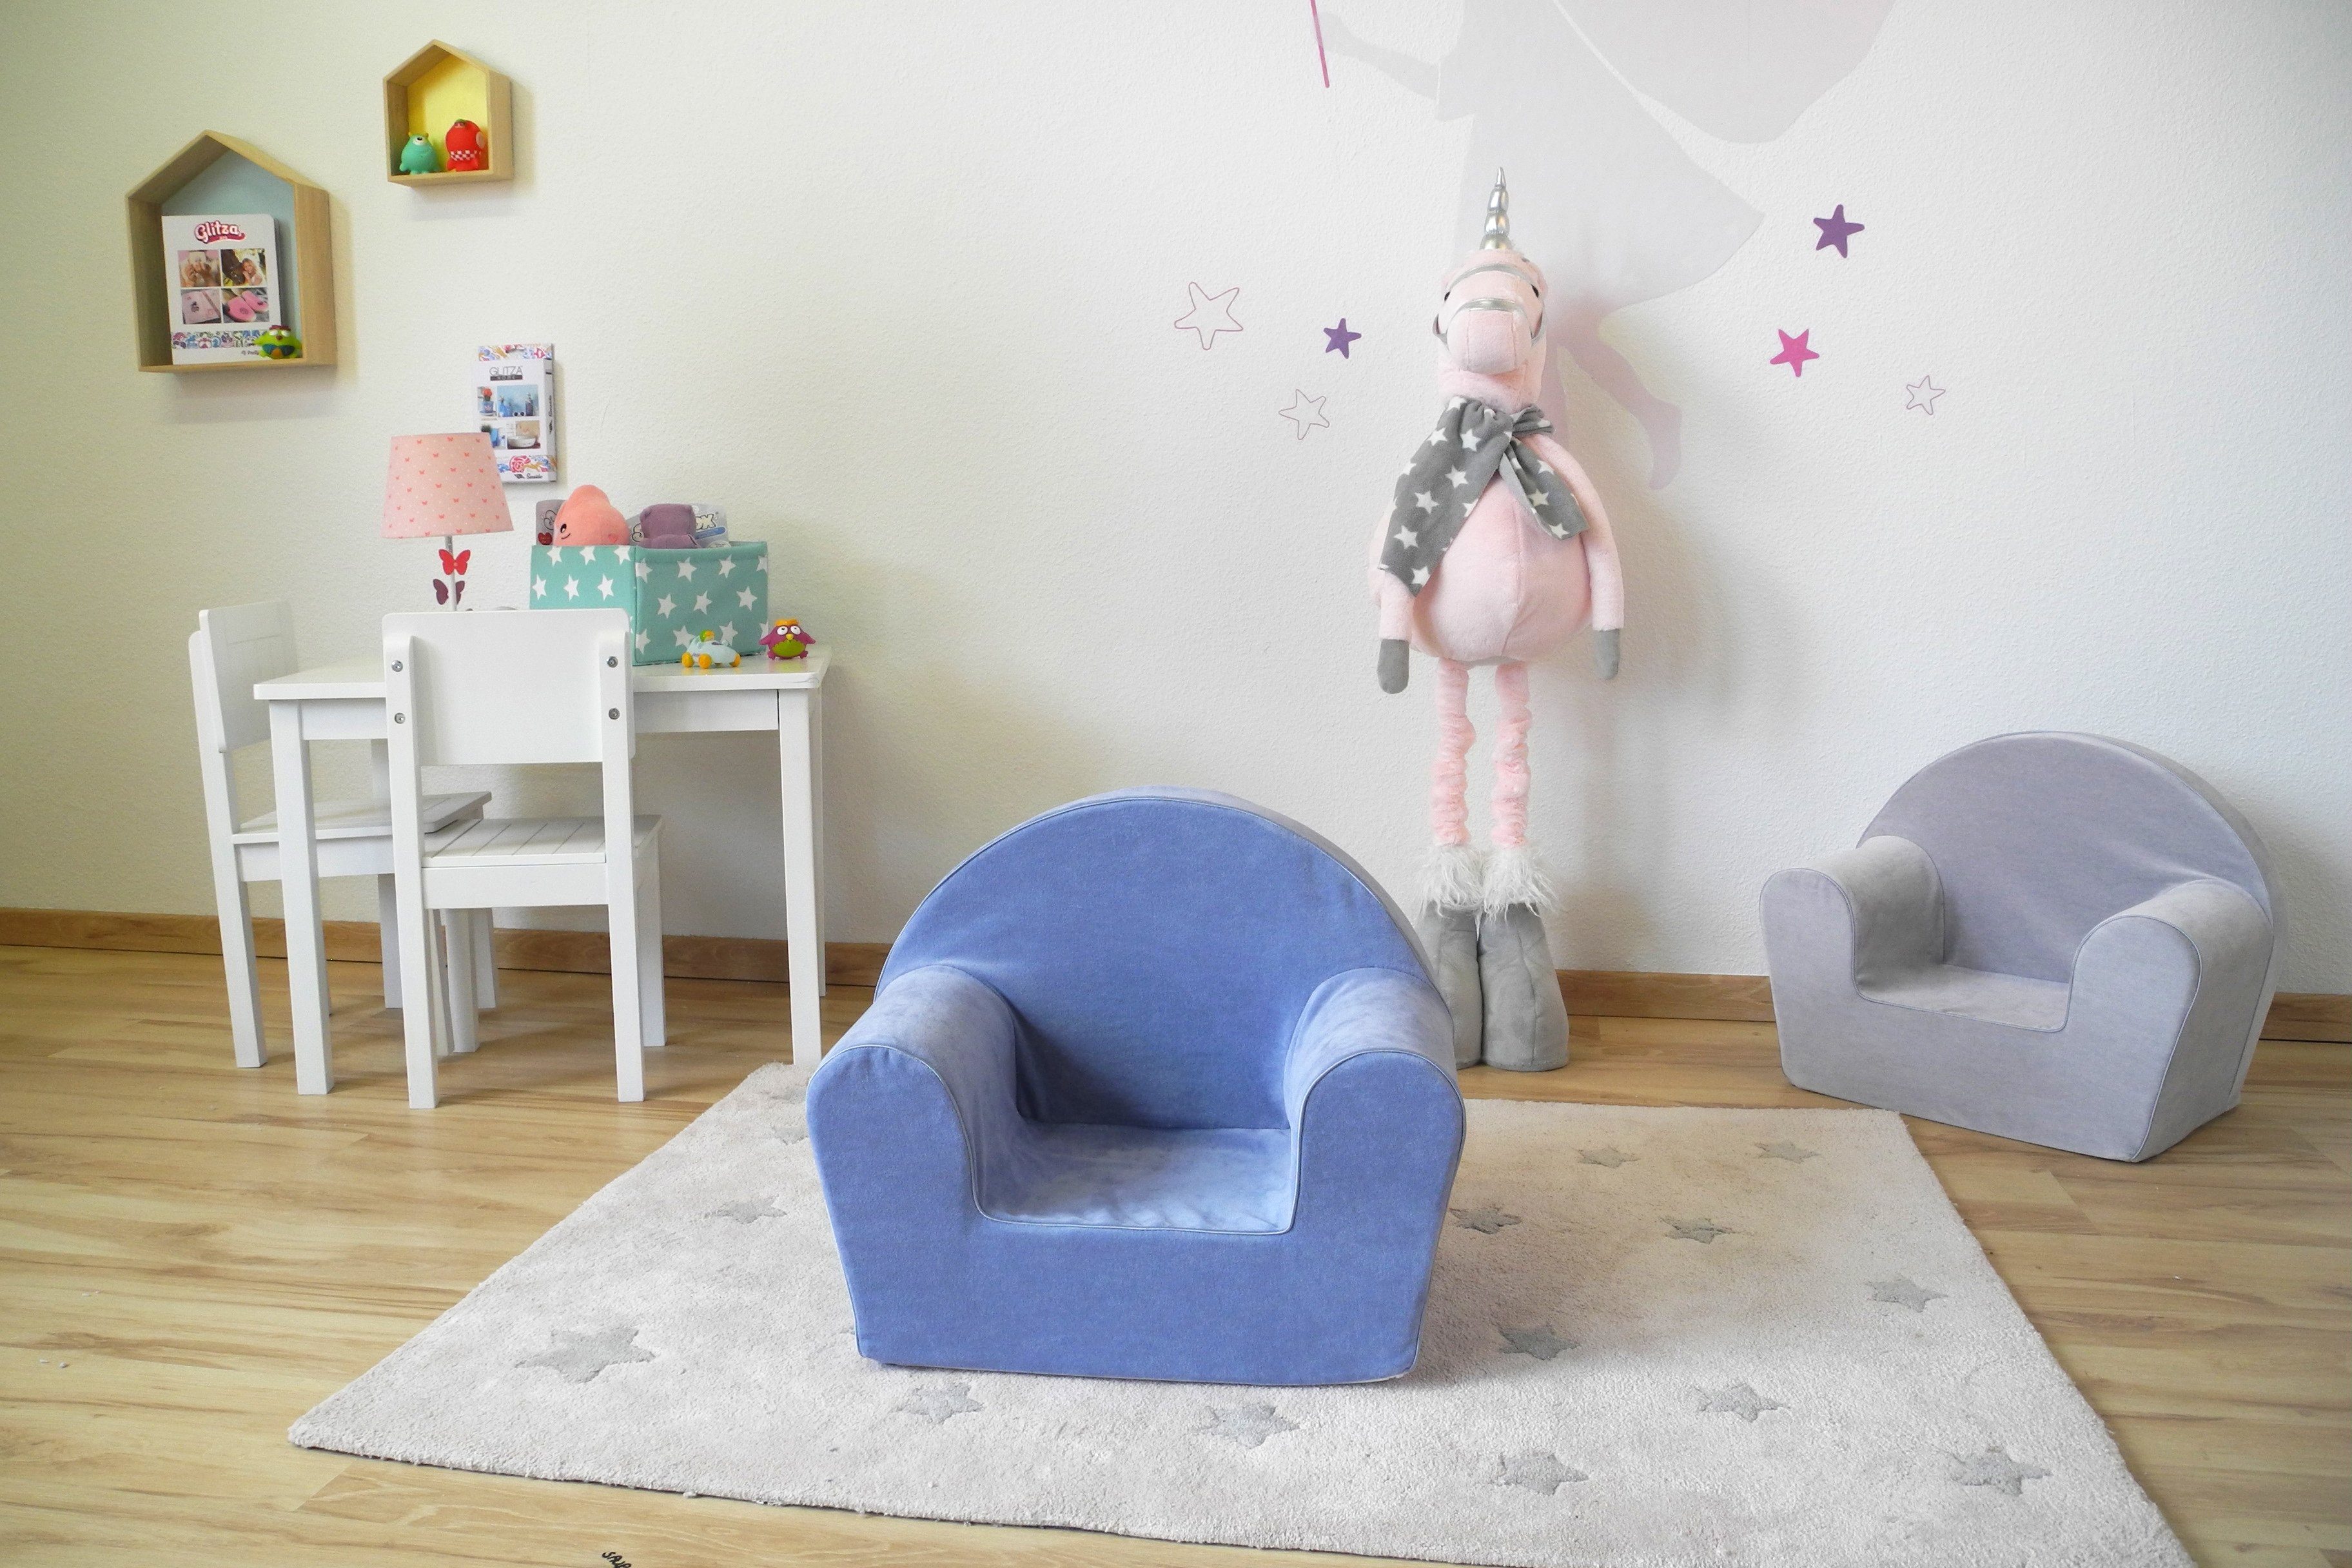 Knorrtoys® Sessel Soft Blue, für Kinder; Europe in Made